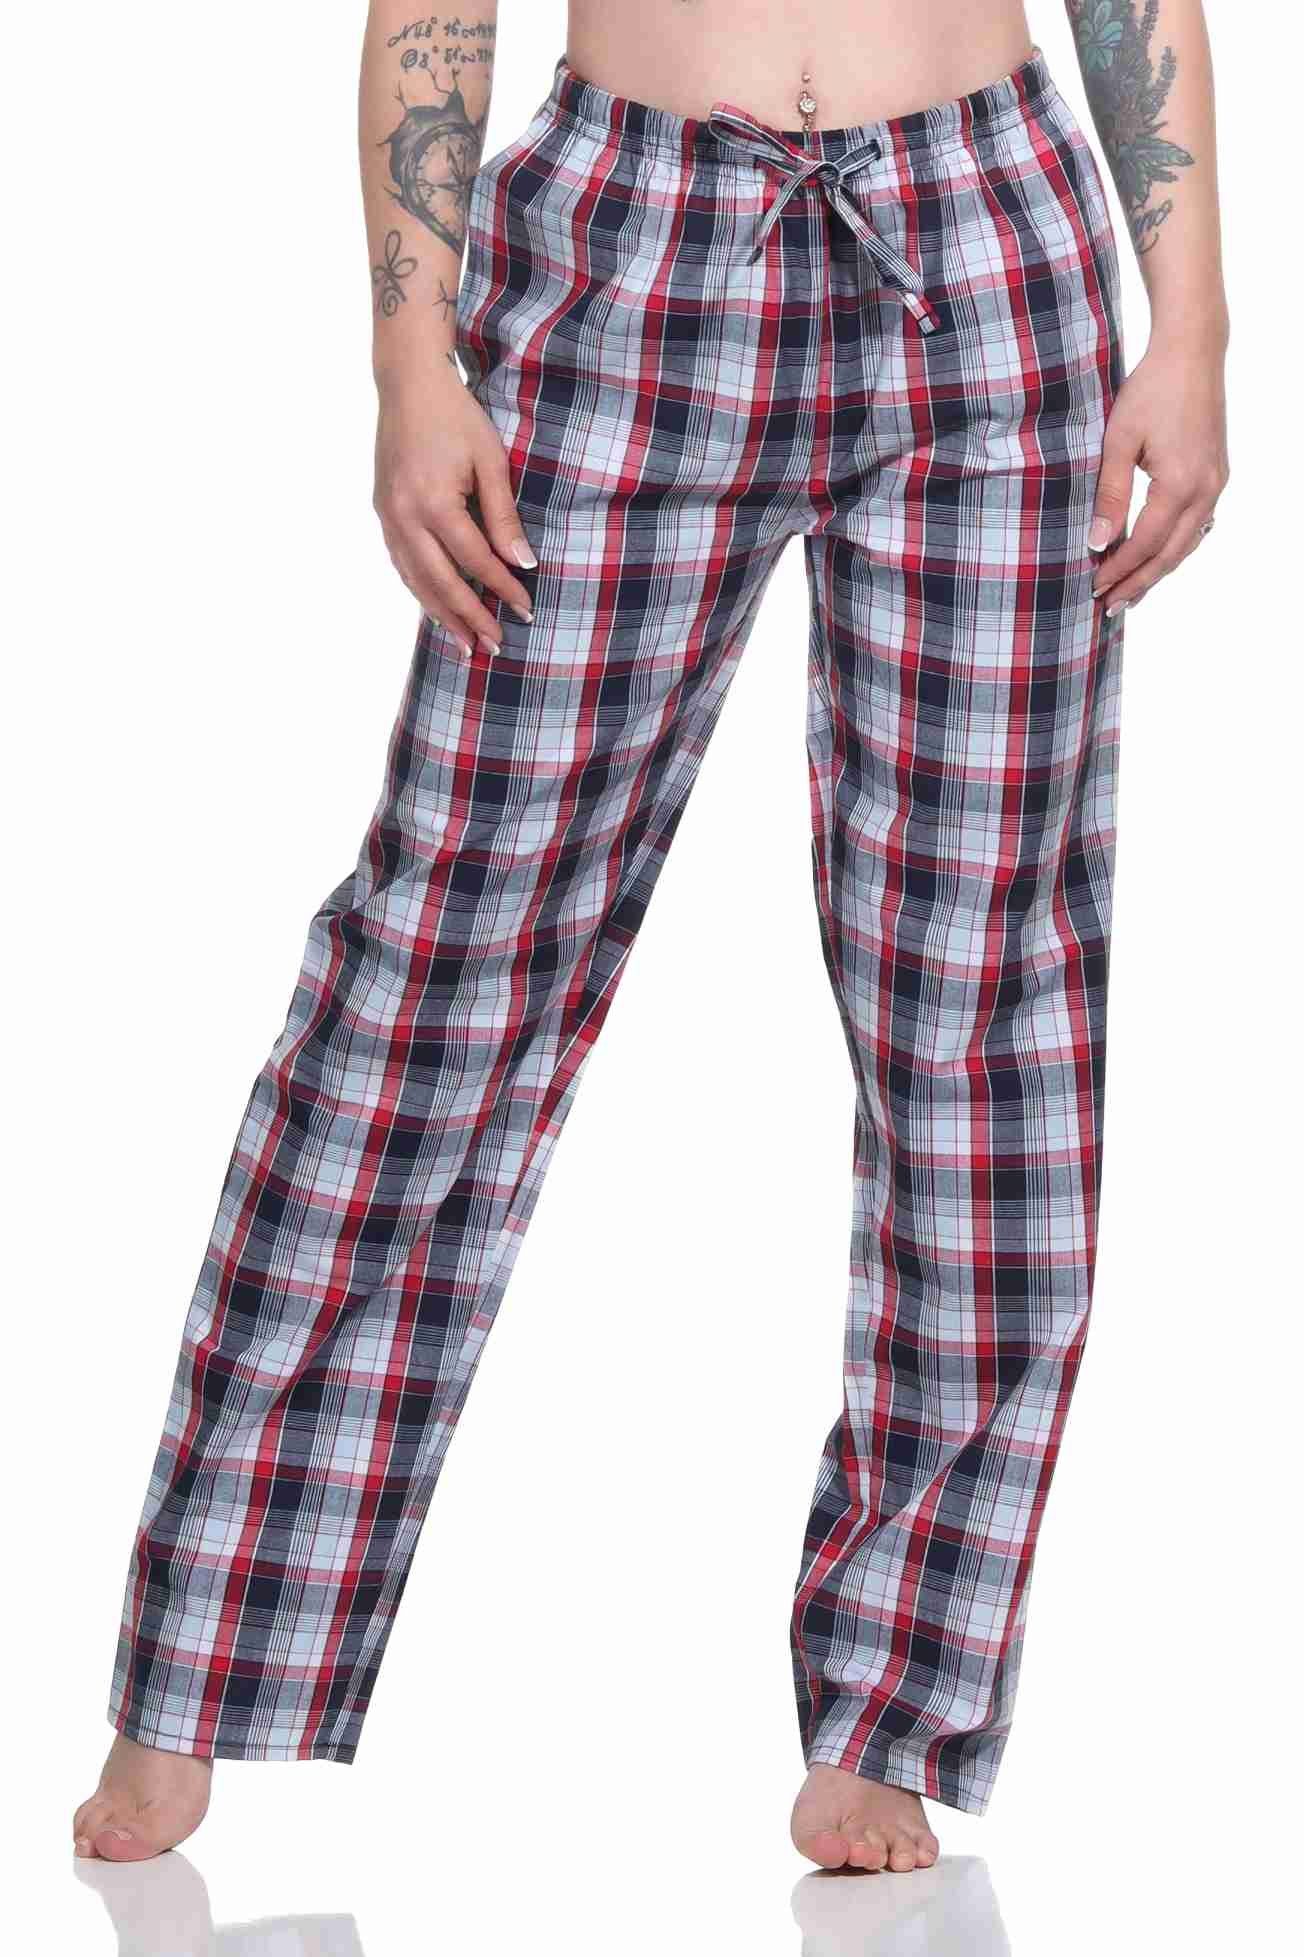 aus zum – ideal Pyjama dunkelgrau relaxen gewebt Baumwolle Normann Hose Damen Schlafanzug lang